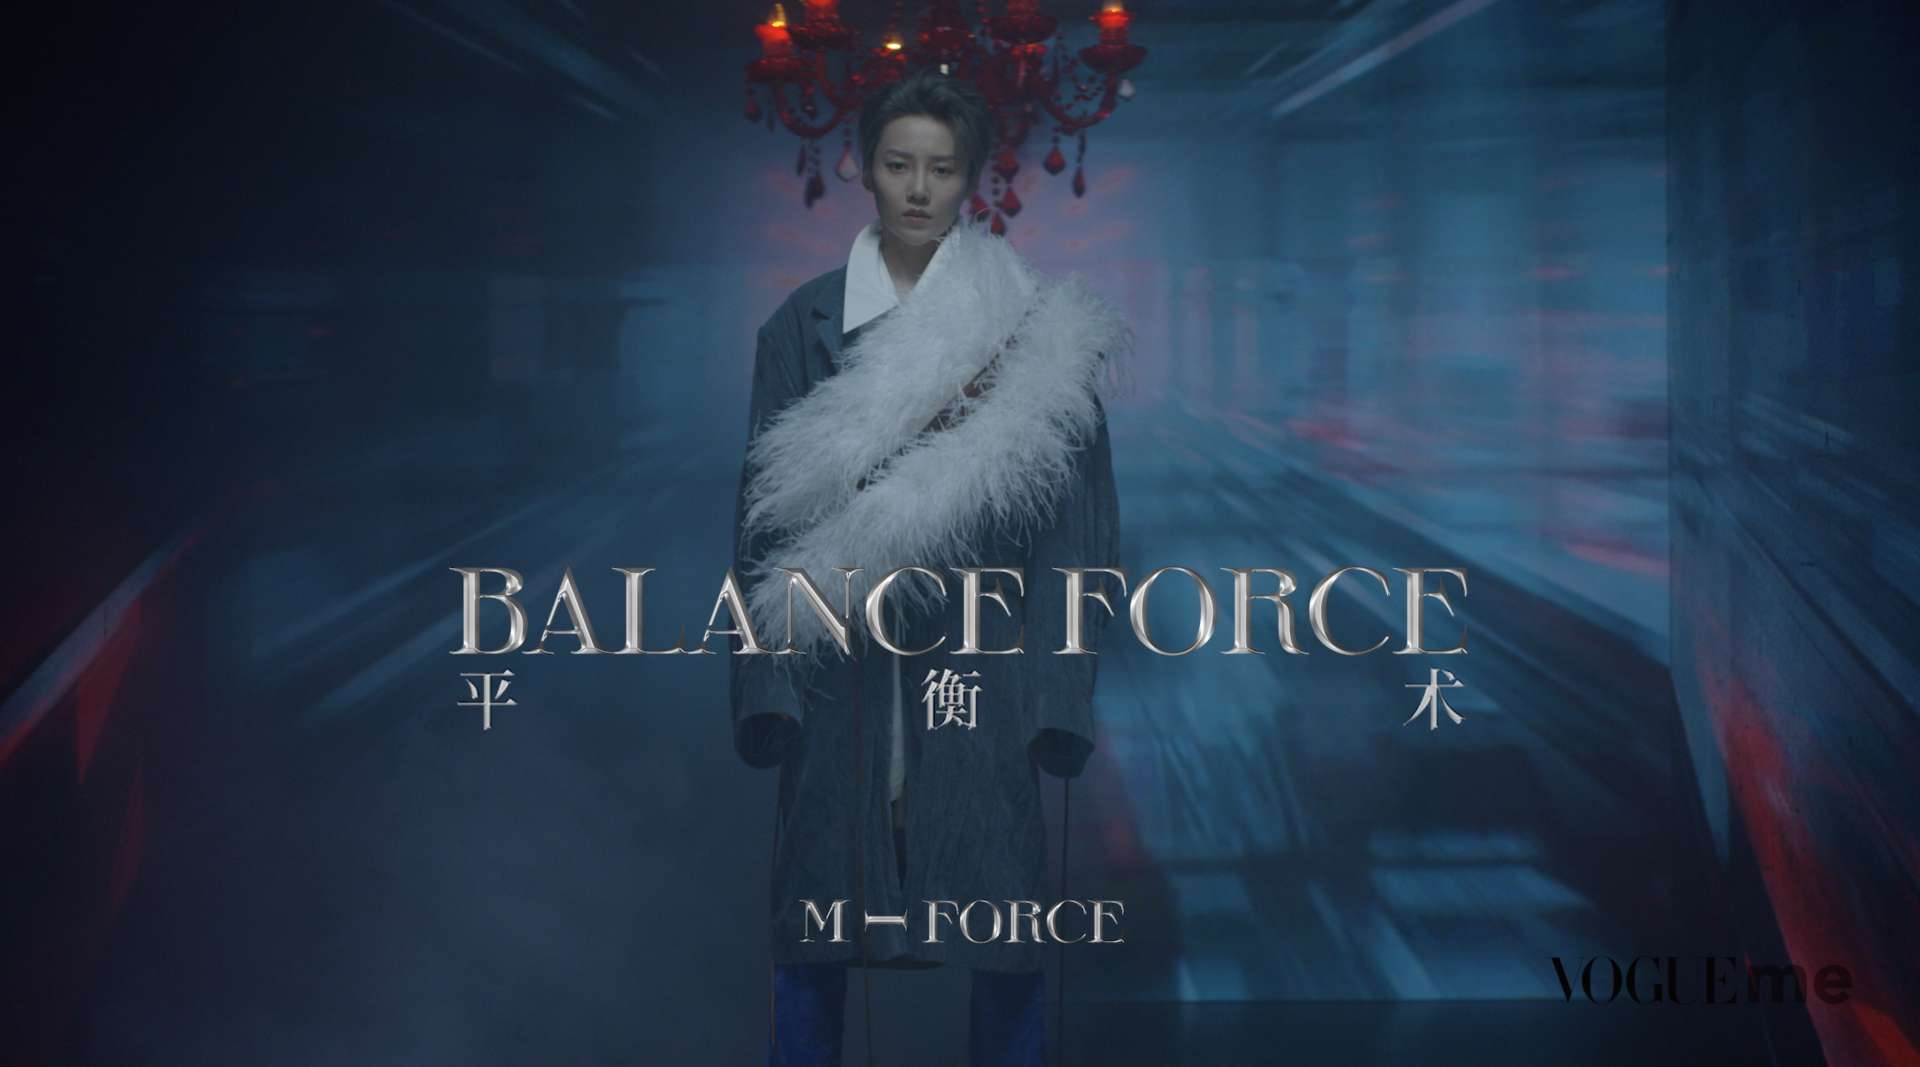 VogueMe 2021 -M Force- 刘雨昕开年封面